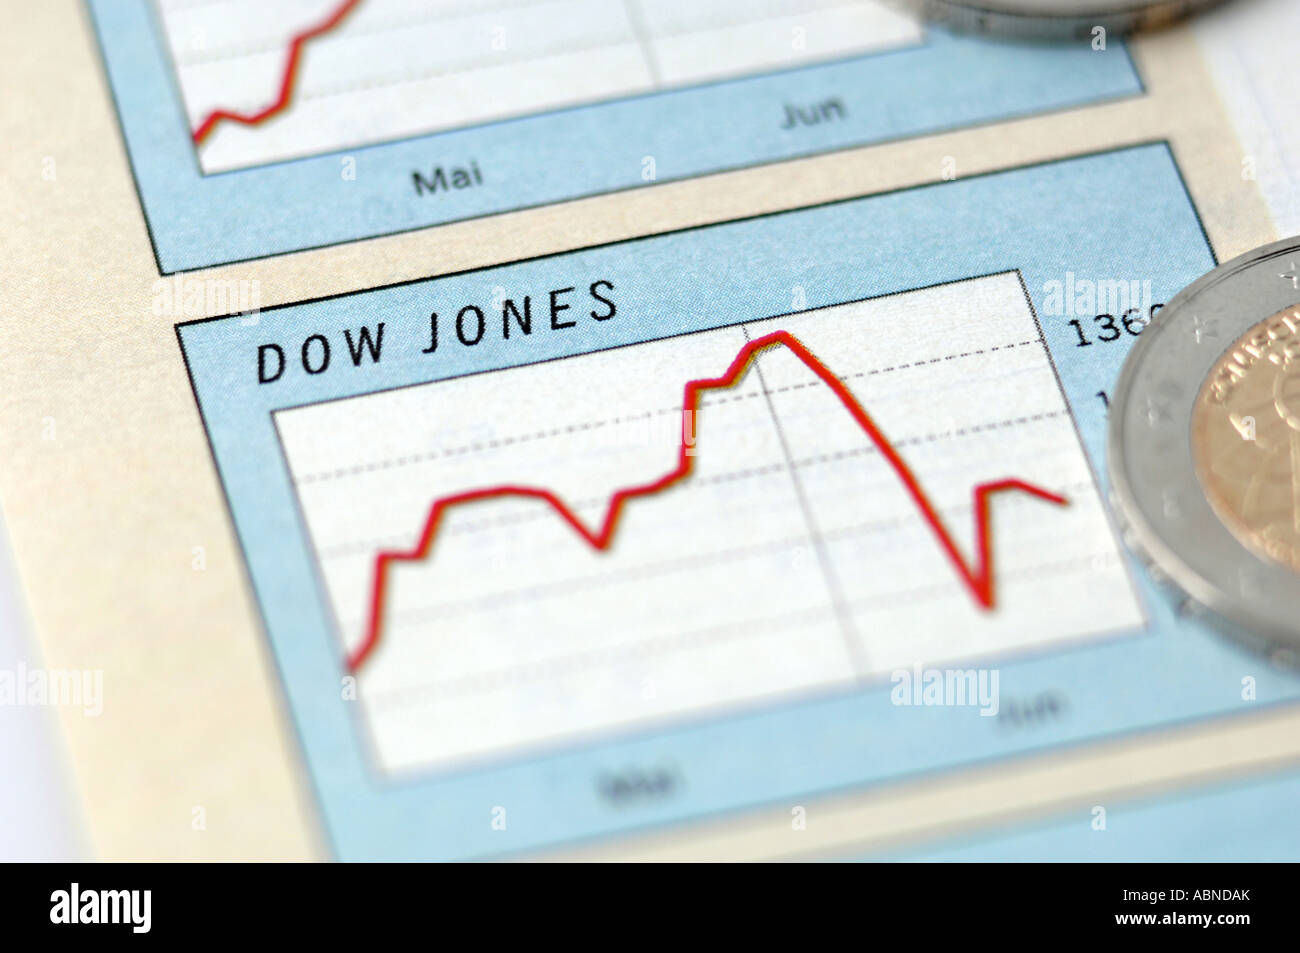 Dow jones index